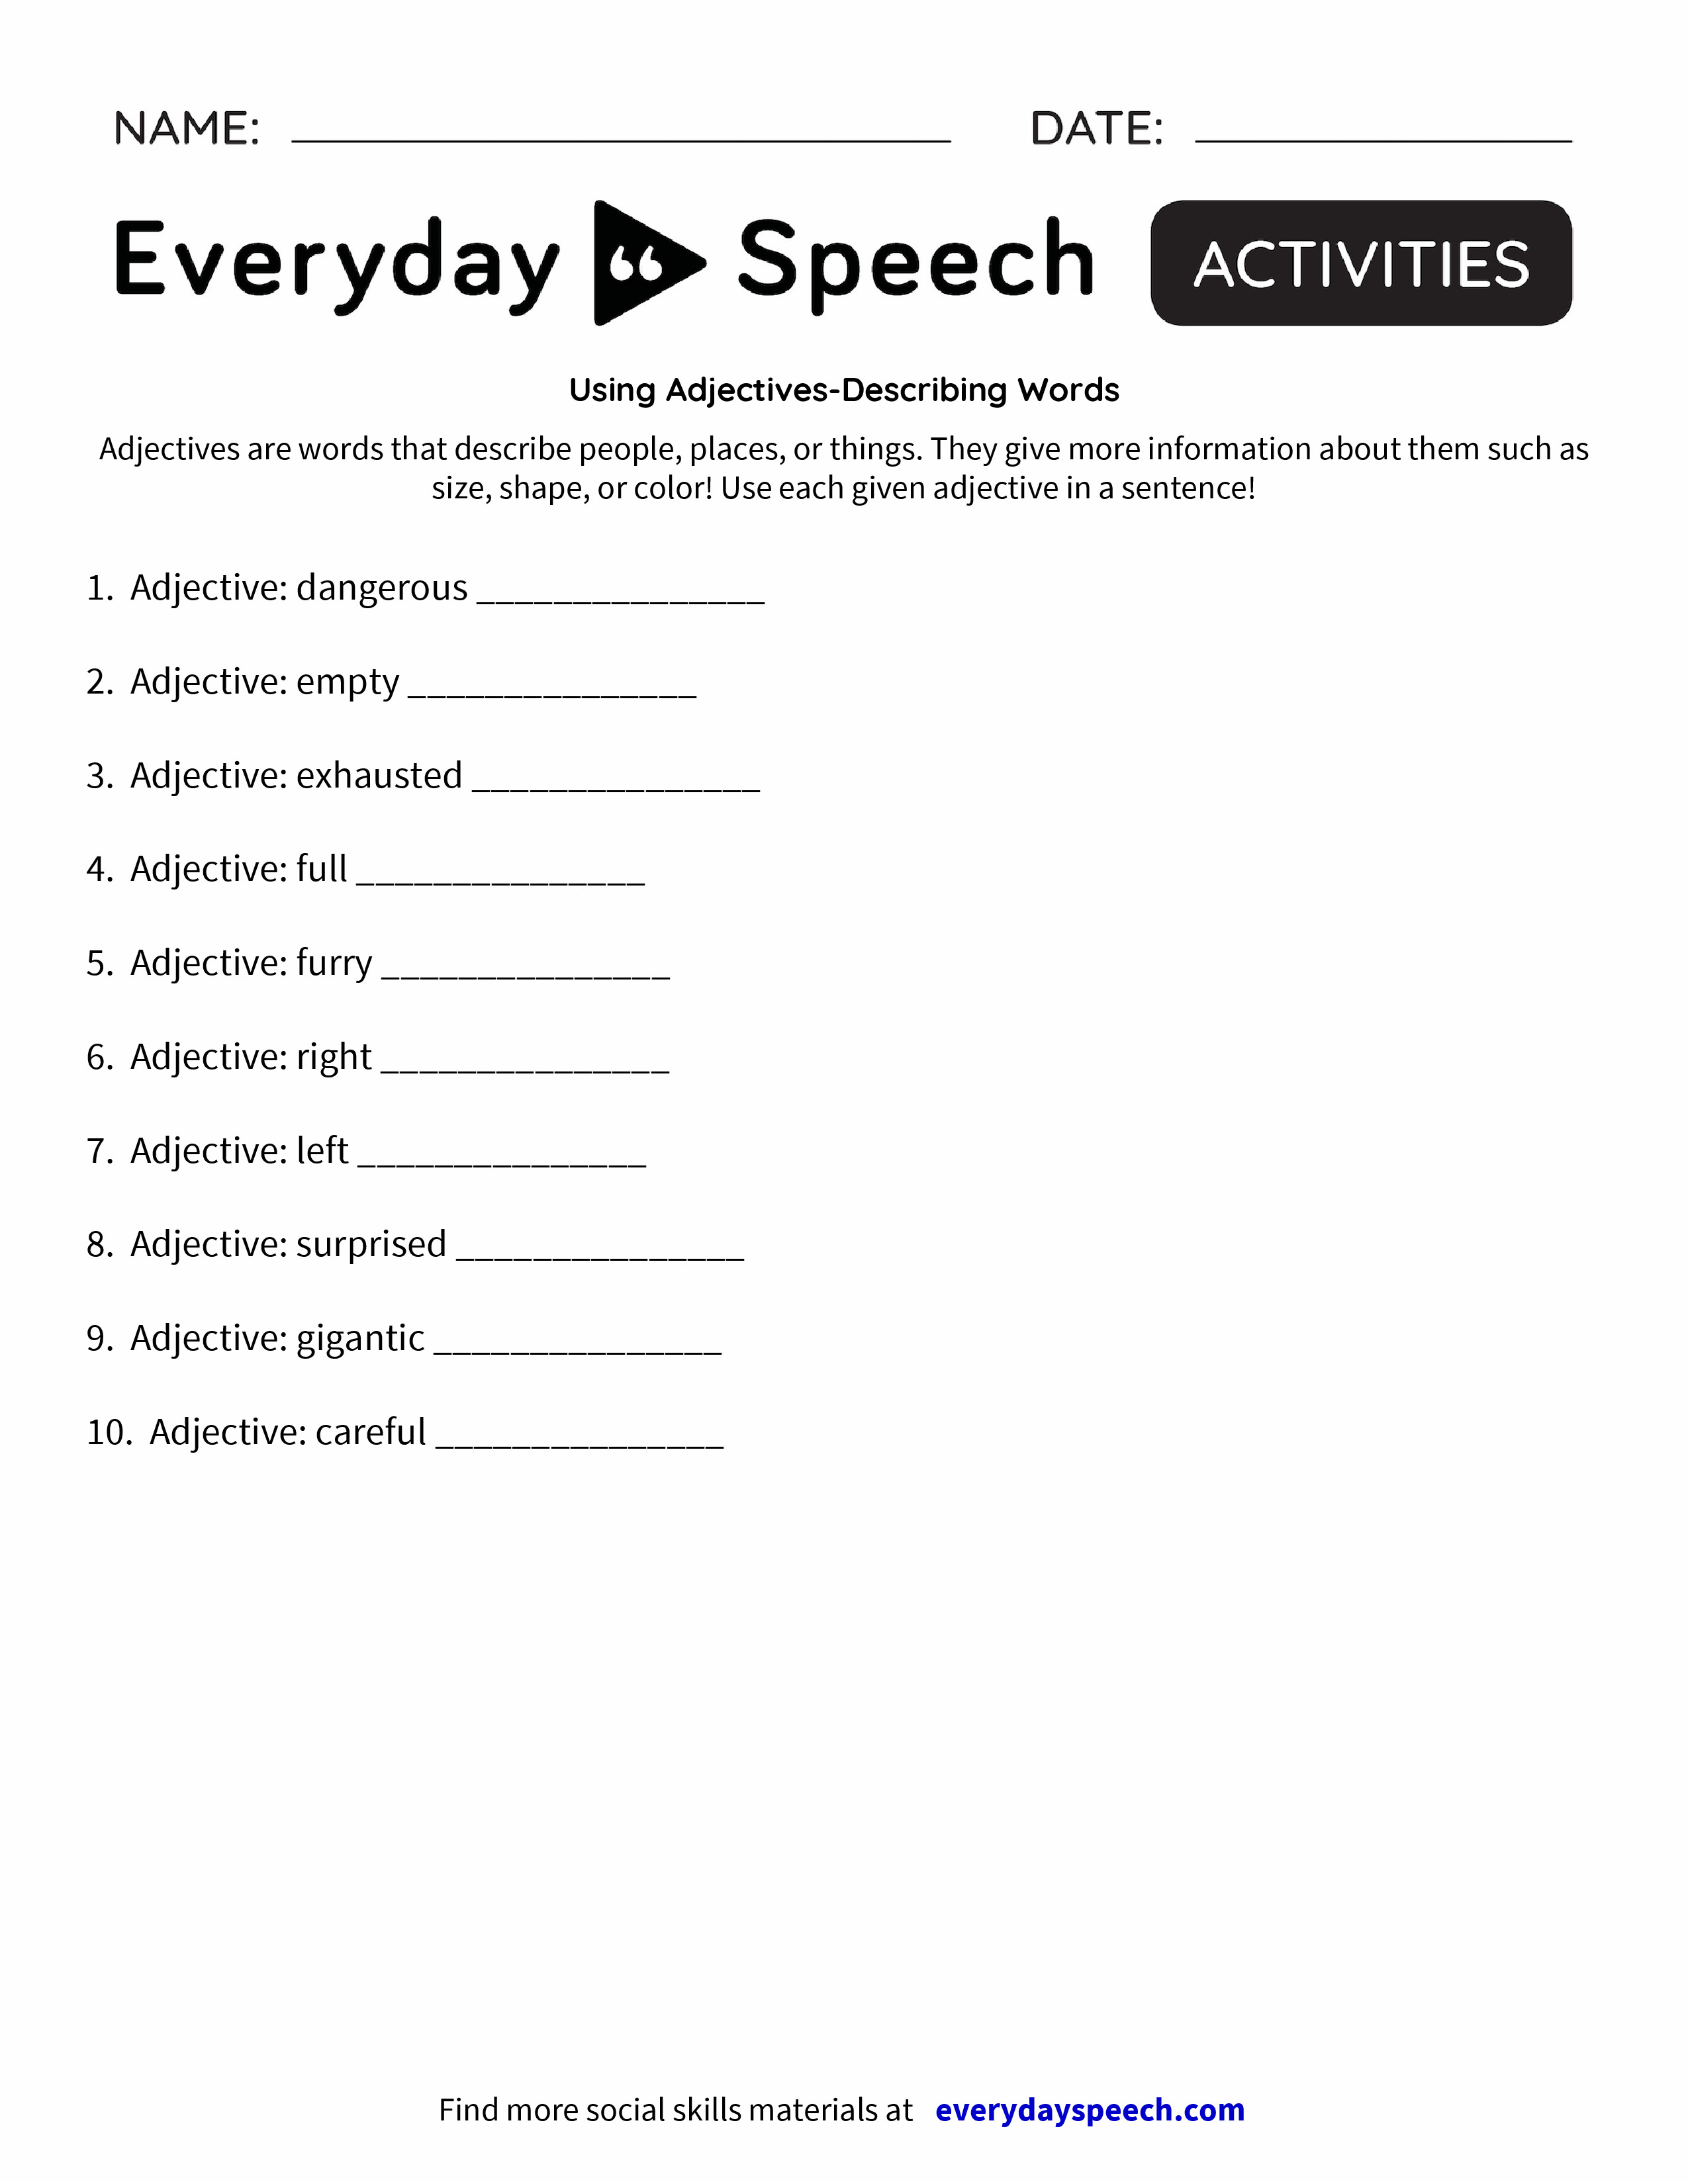 describing words for speech